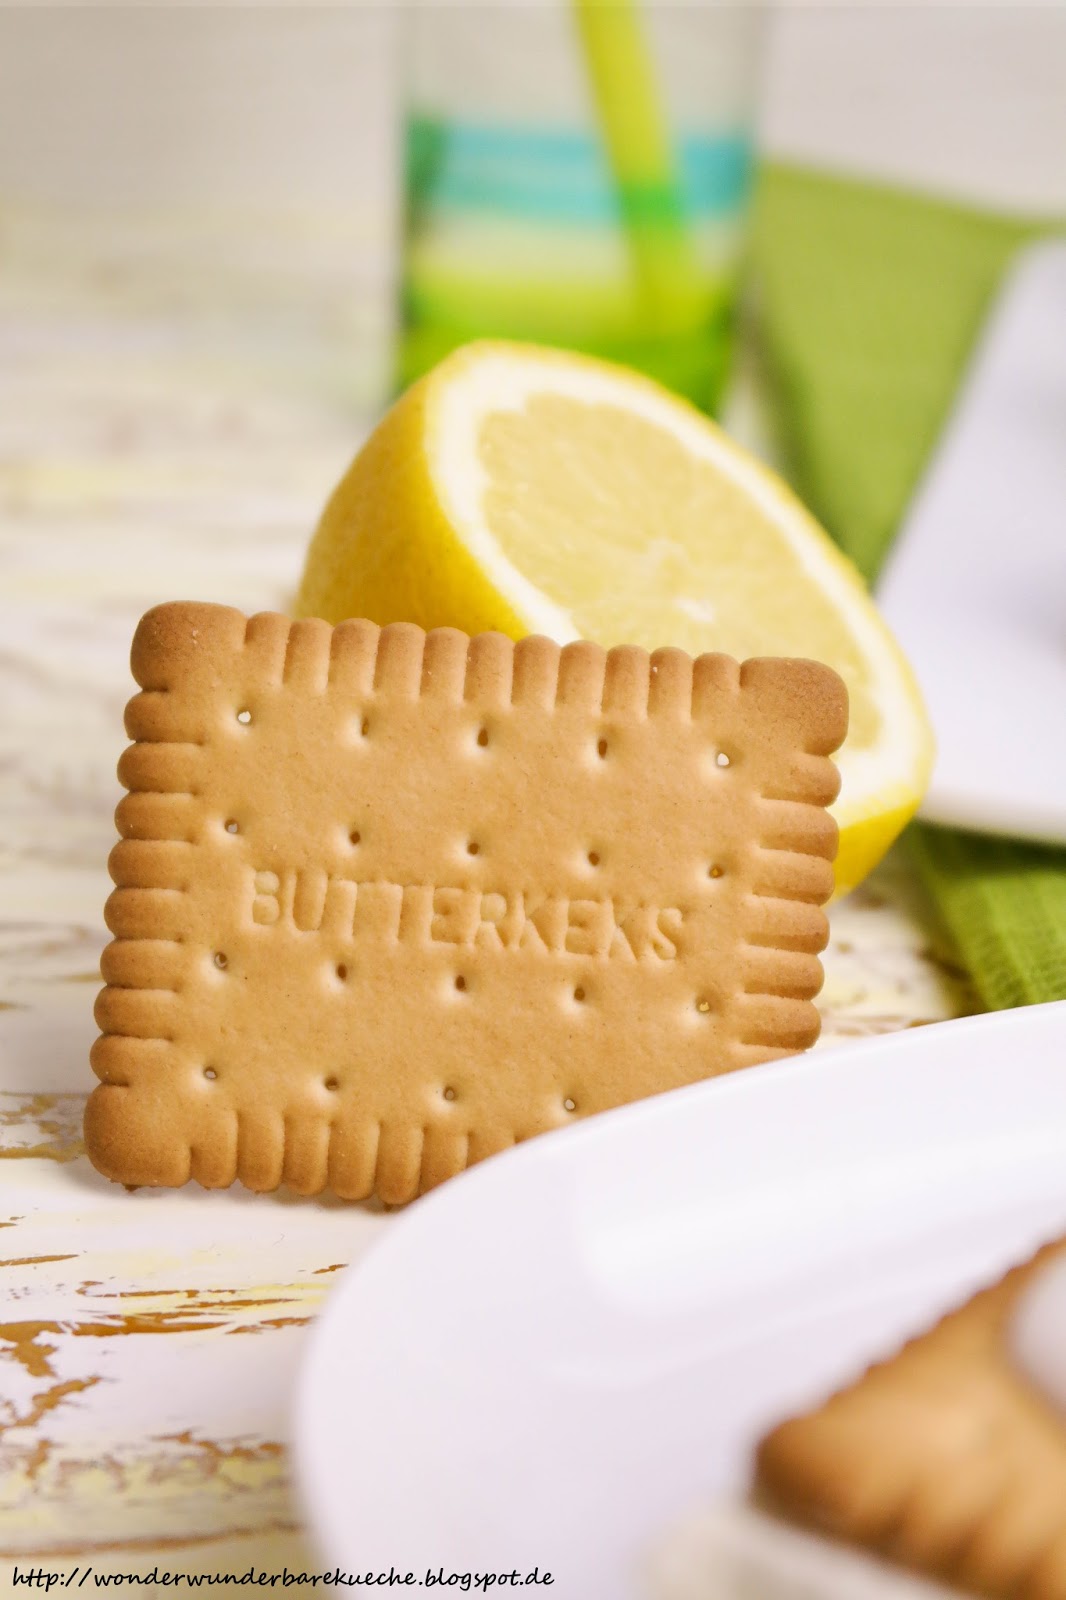 Astounding Zitronen Butterkeks Kuchen Dr Oetker Concept | Dragsar